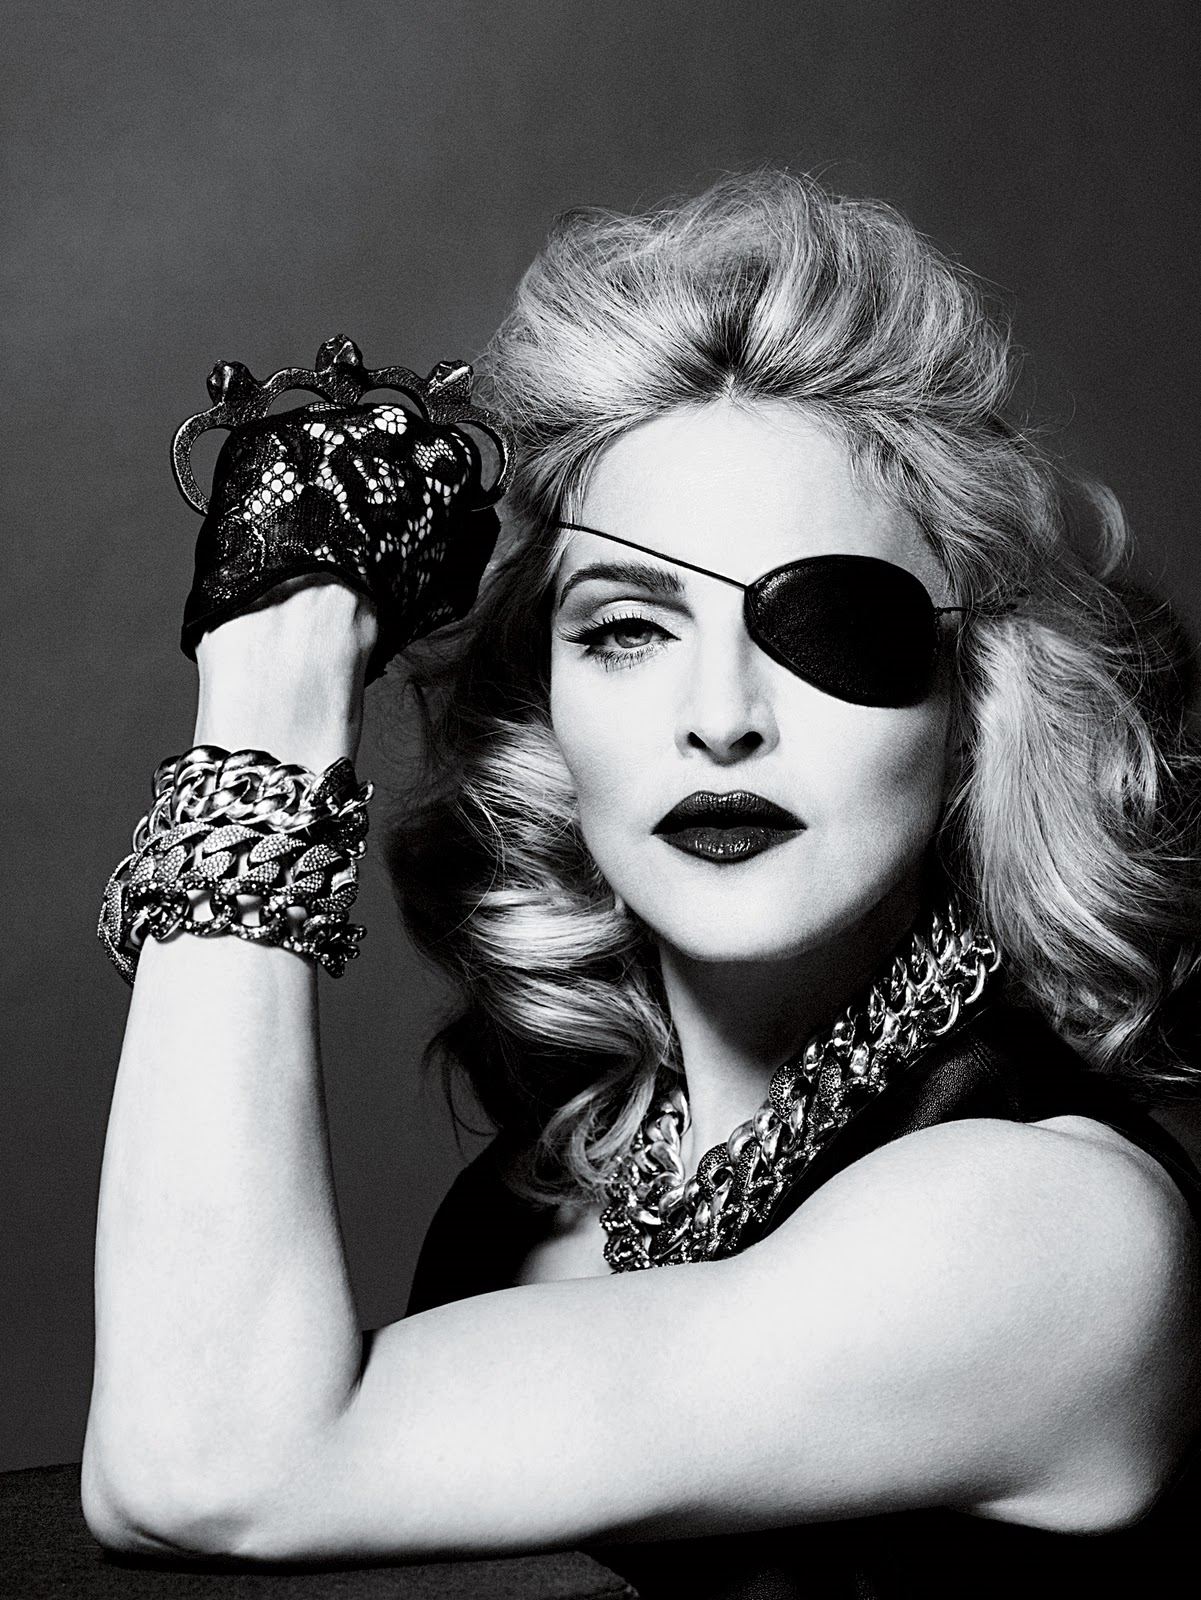 http://3.bp.blogspot.com/_0pynAn-Ksz4/S9_h3If3ClI/AAAAAAAAJEs/32amOHbPk_E/s1600/2010+-+Madonna+by+Alas+&amp;+Piggott+for+Interview+-+14.jpg